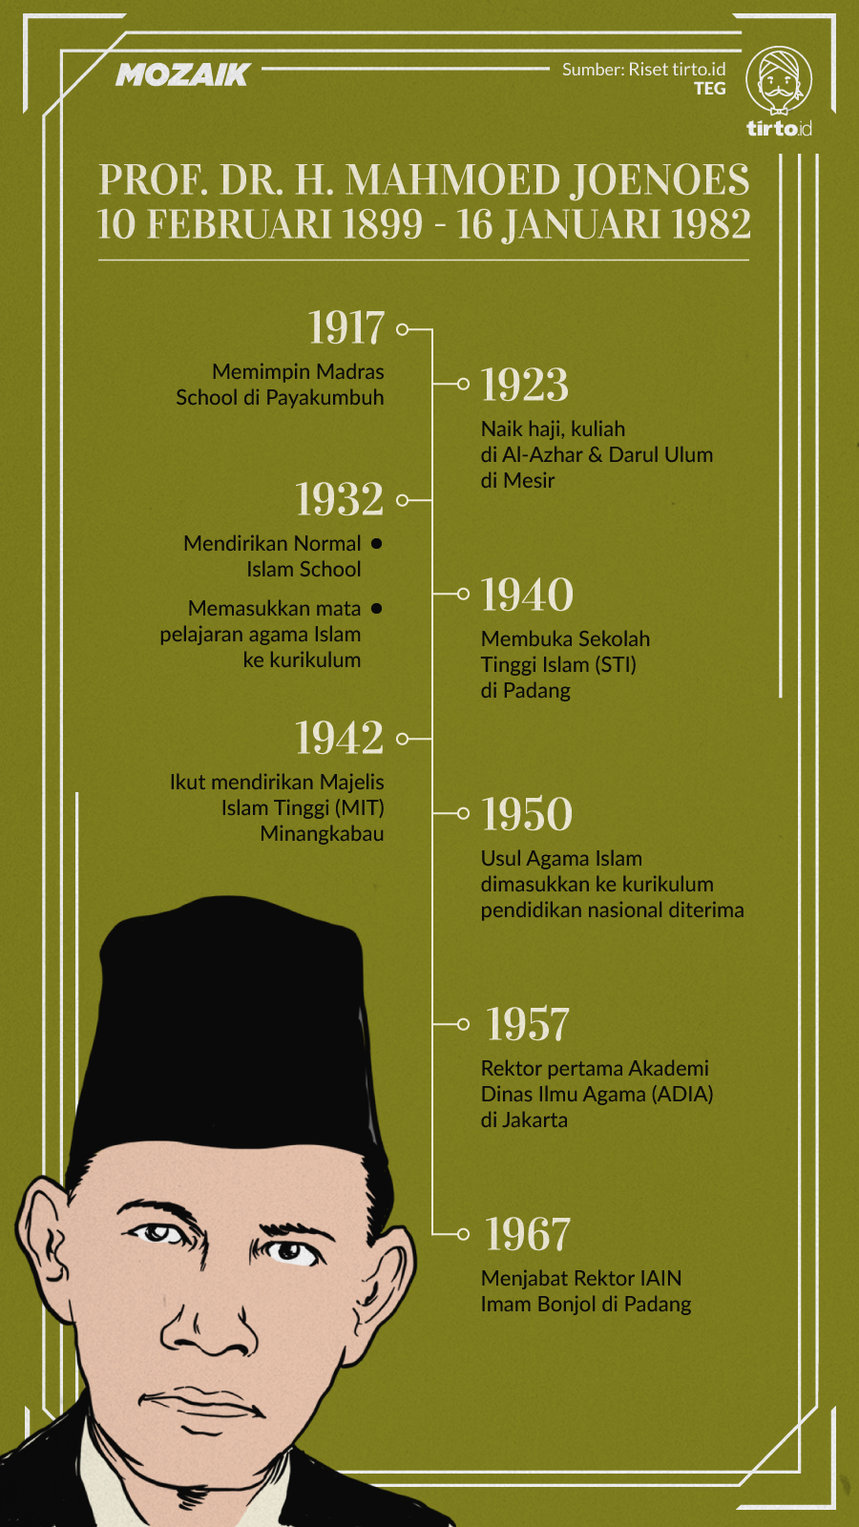 Infografik Mozaik Mahmoed Joenoes